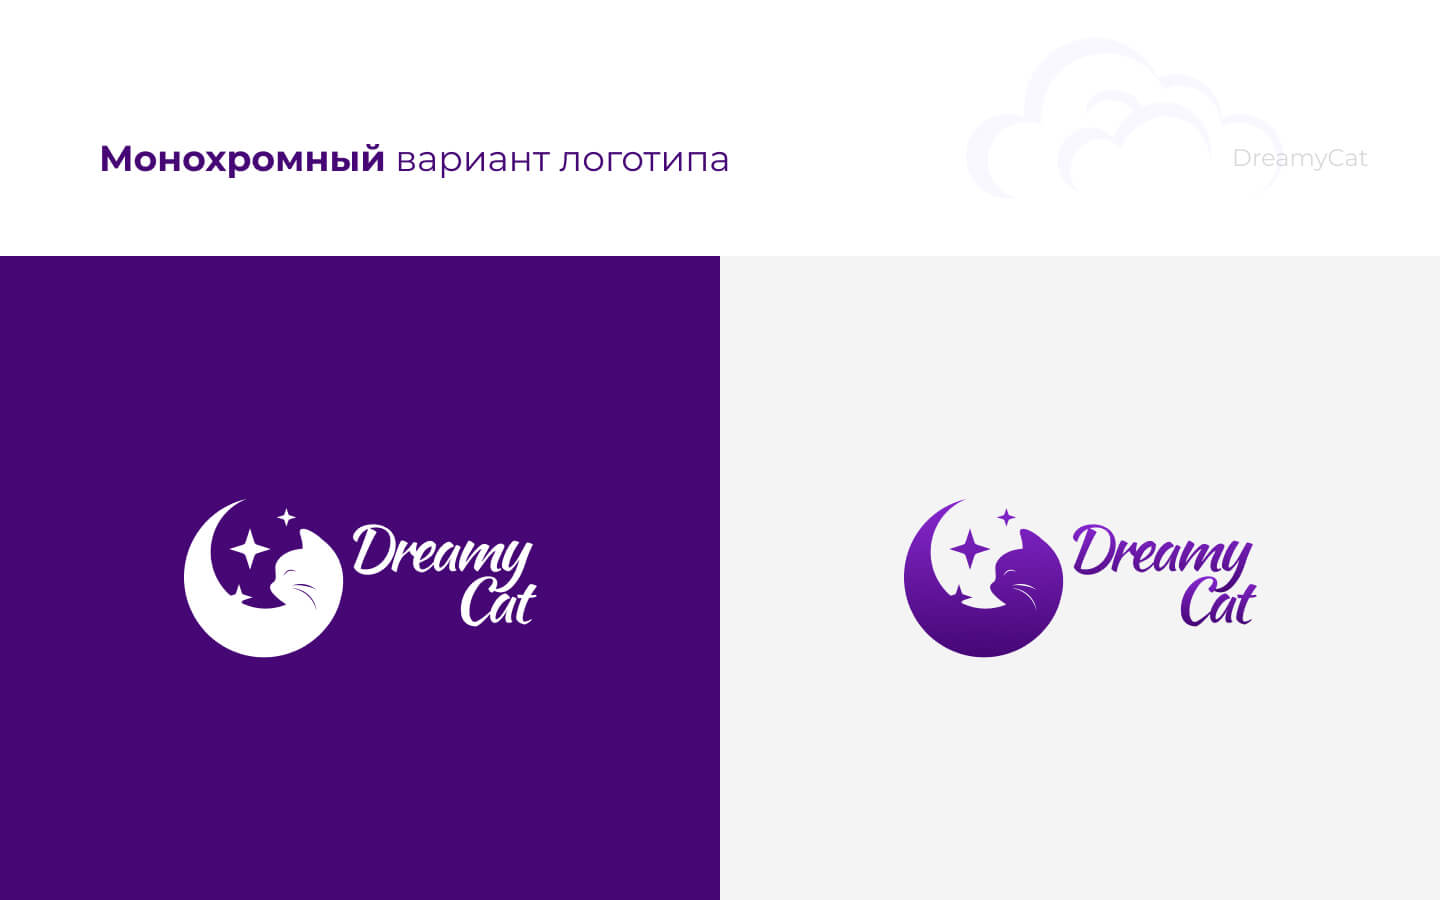 DreamyCat_logo_04